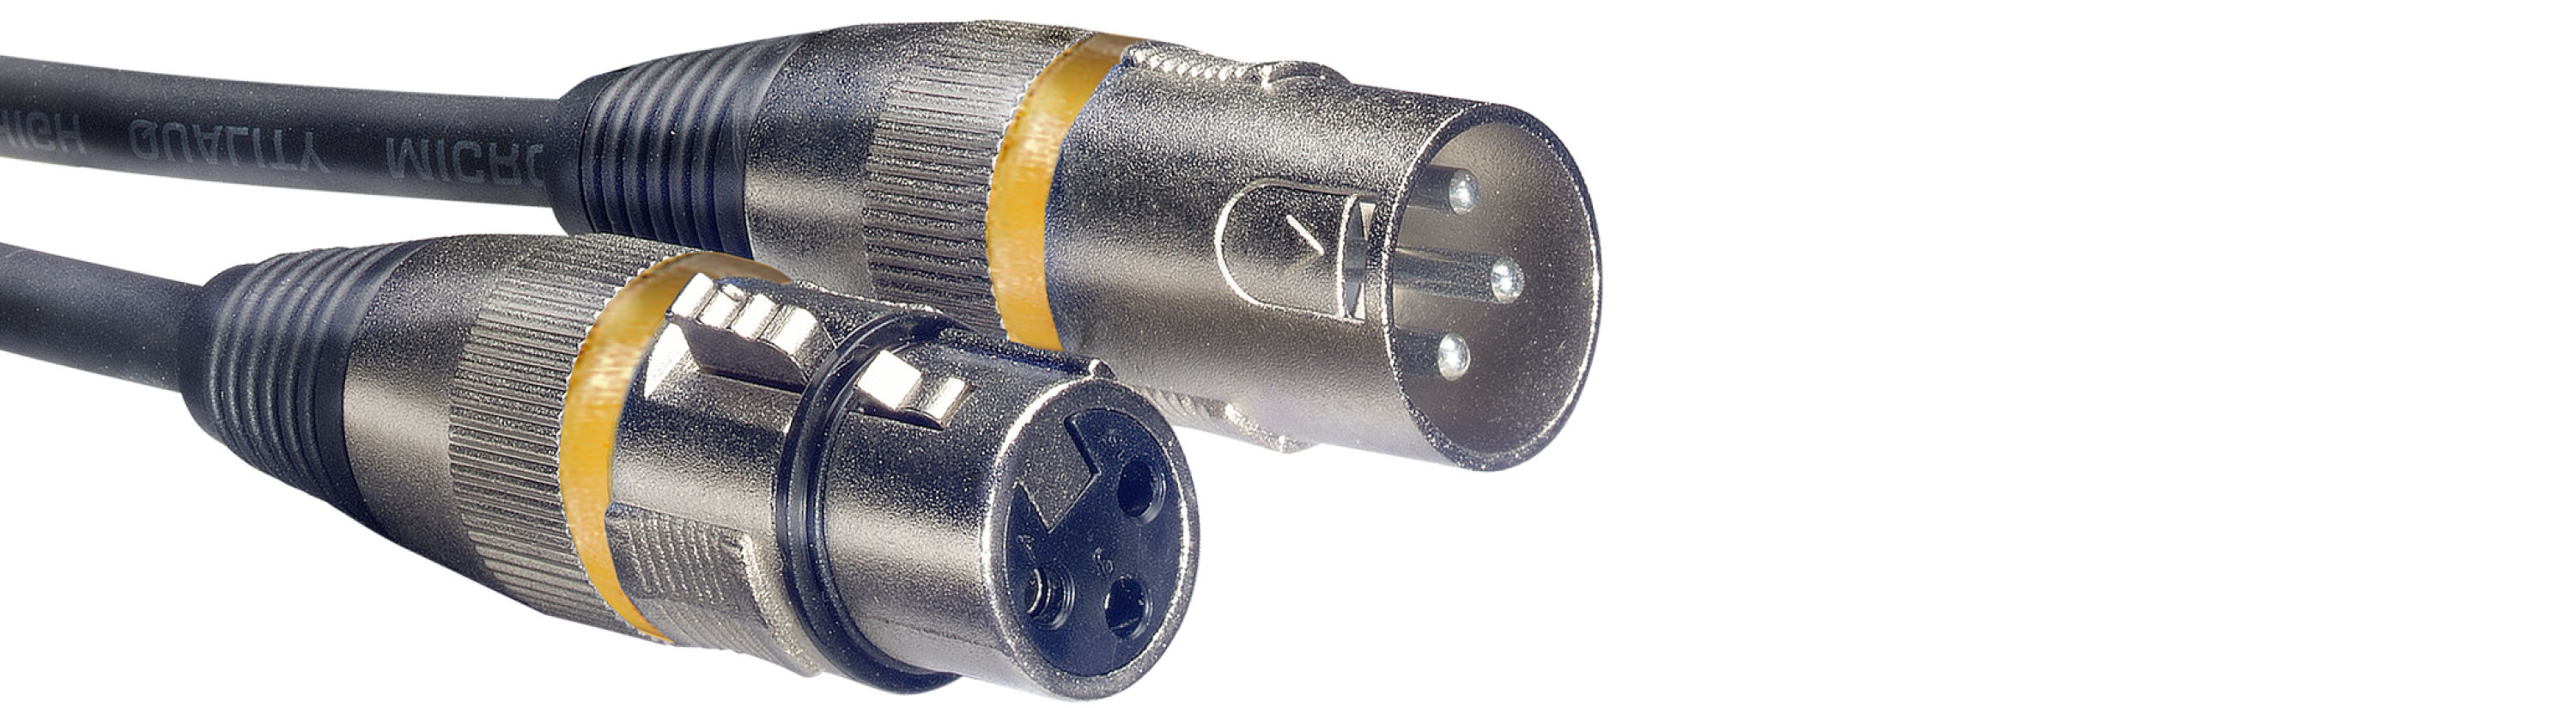 Stagg SMC10 YW, kabel mikrofonní XLR/XLR, 10m